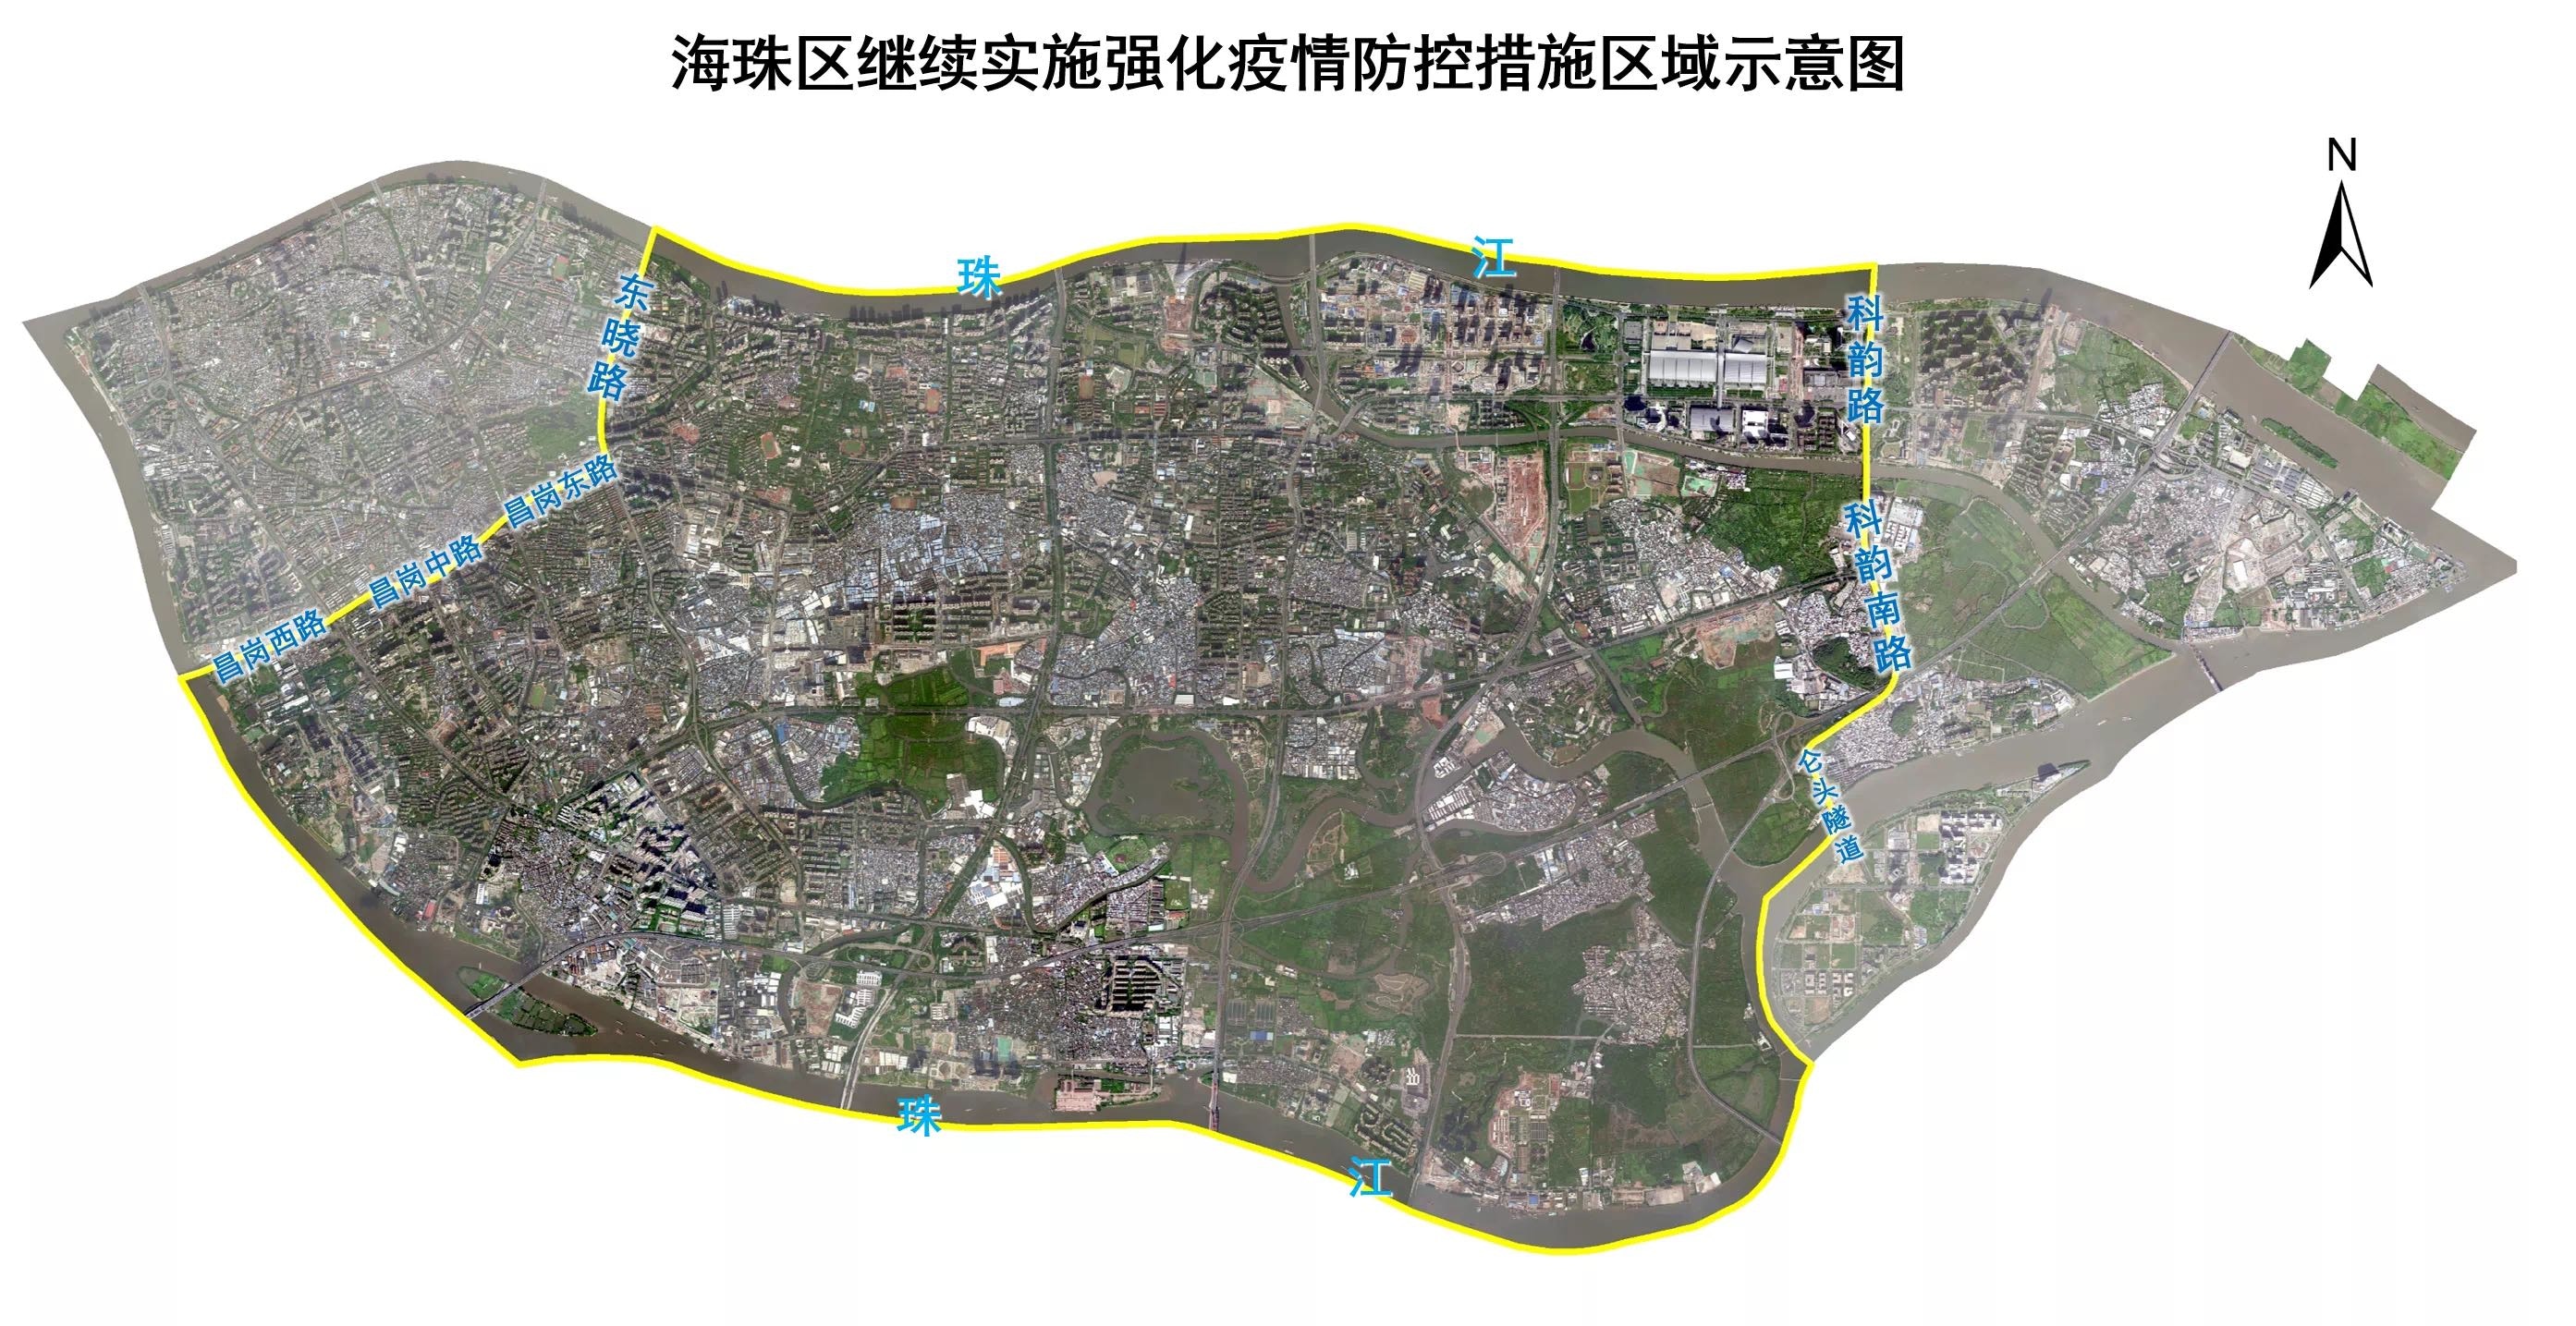 海珠区东晓路接昌岗路以东，科韵路以西的区域（图片中间部分）将继续强化疫情防控措施至11月16日午夜12时。